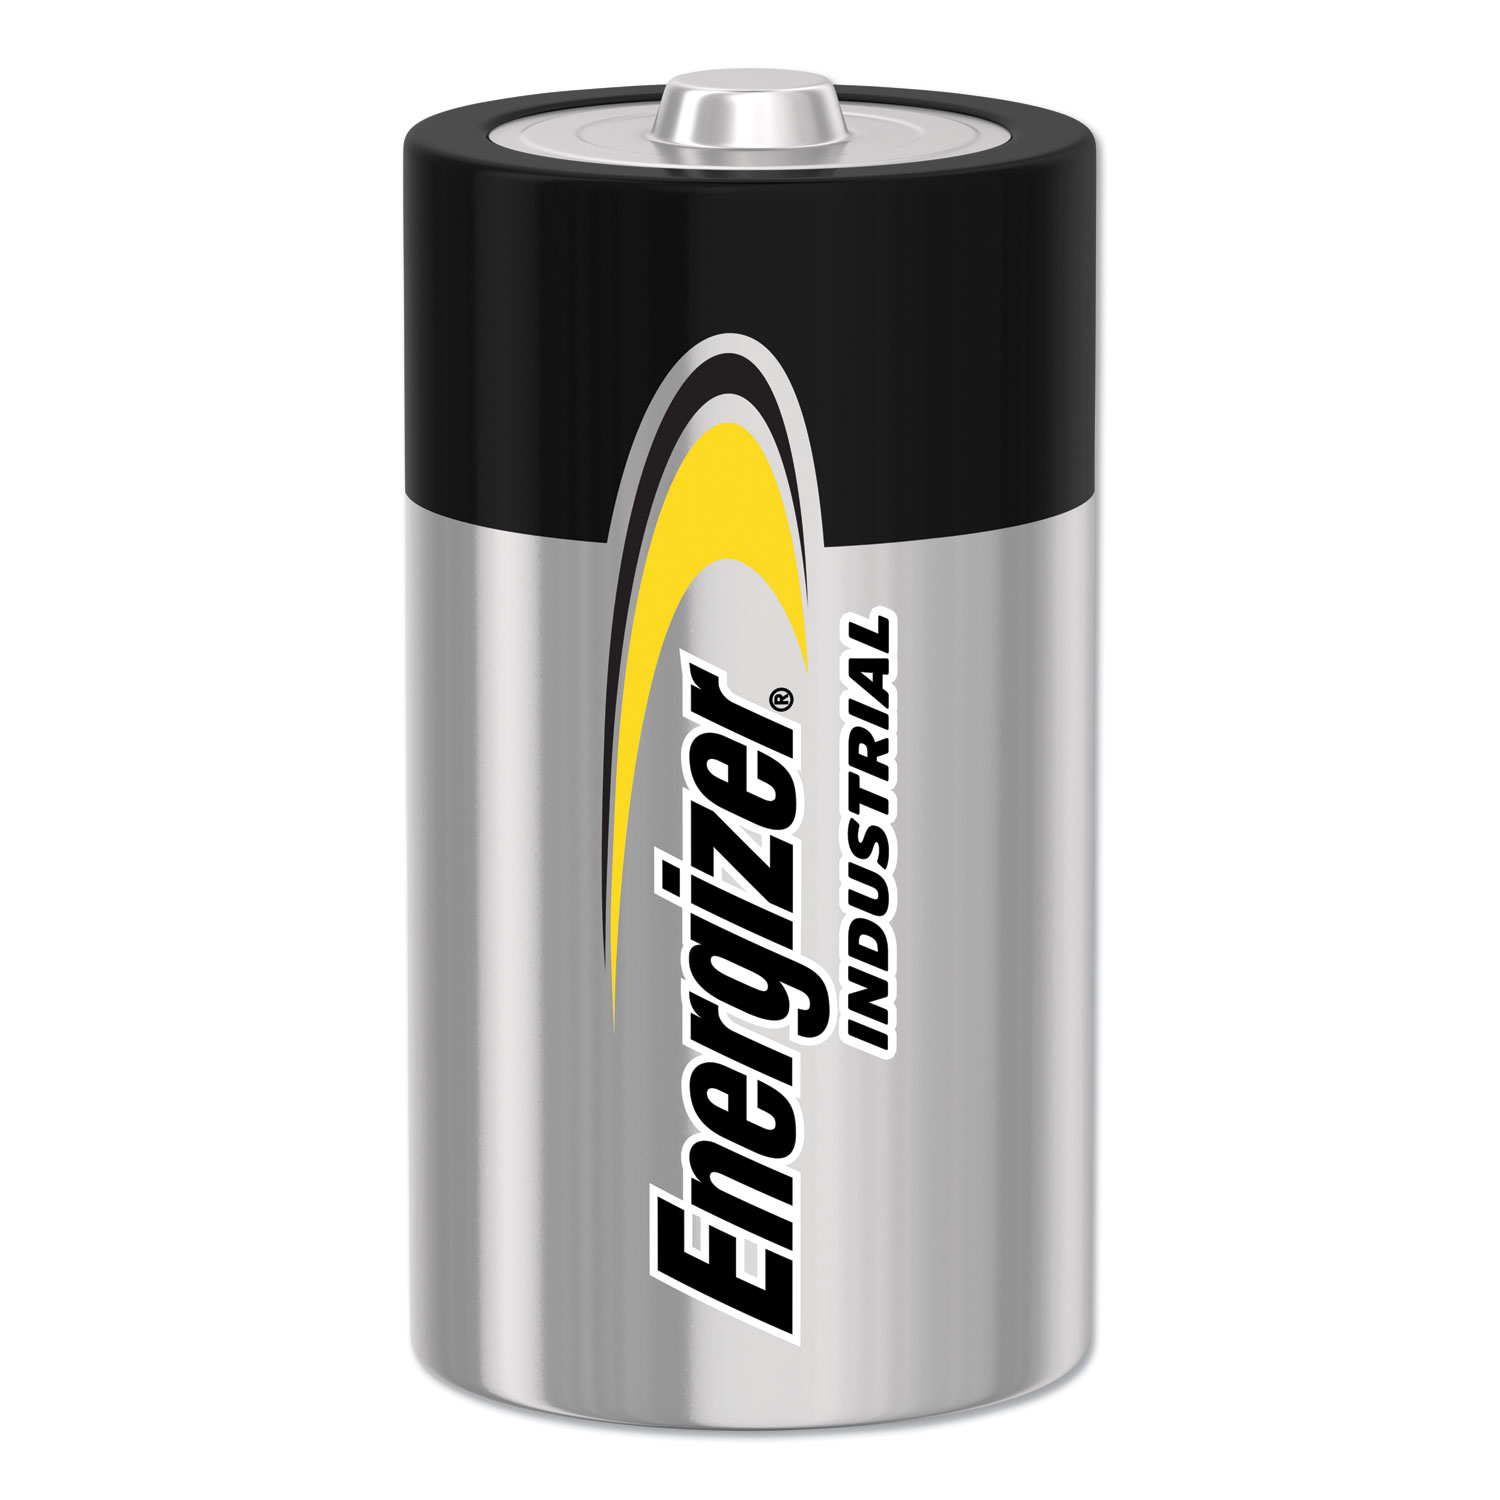 C ENERGIZER INDUSTRIAL Alkaline 1.5v Batteries LR14 AM2